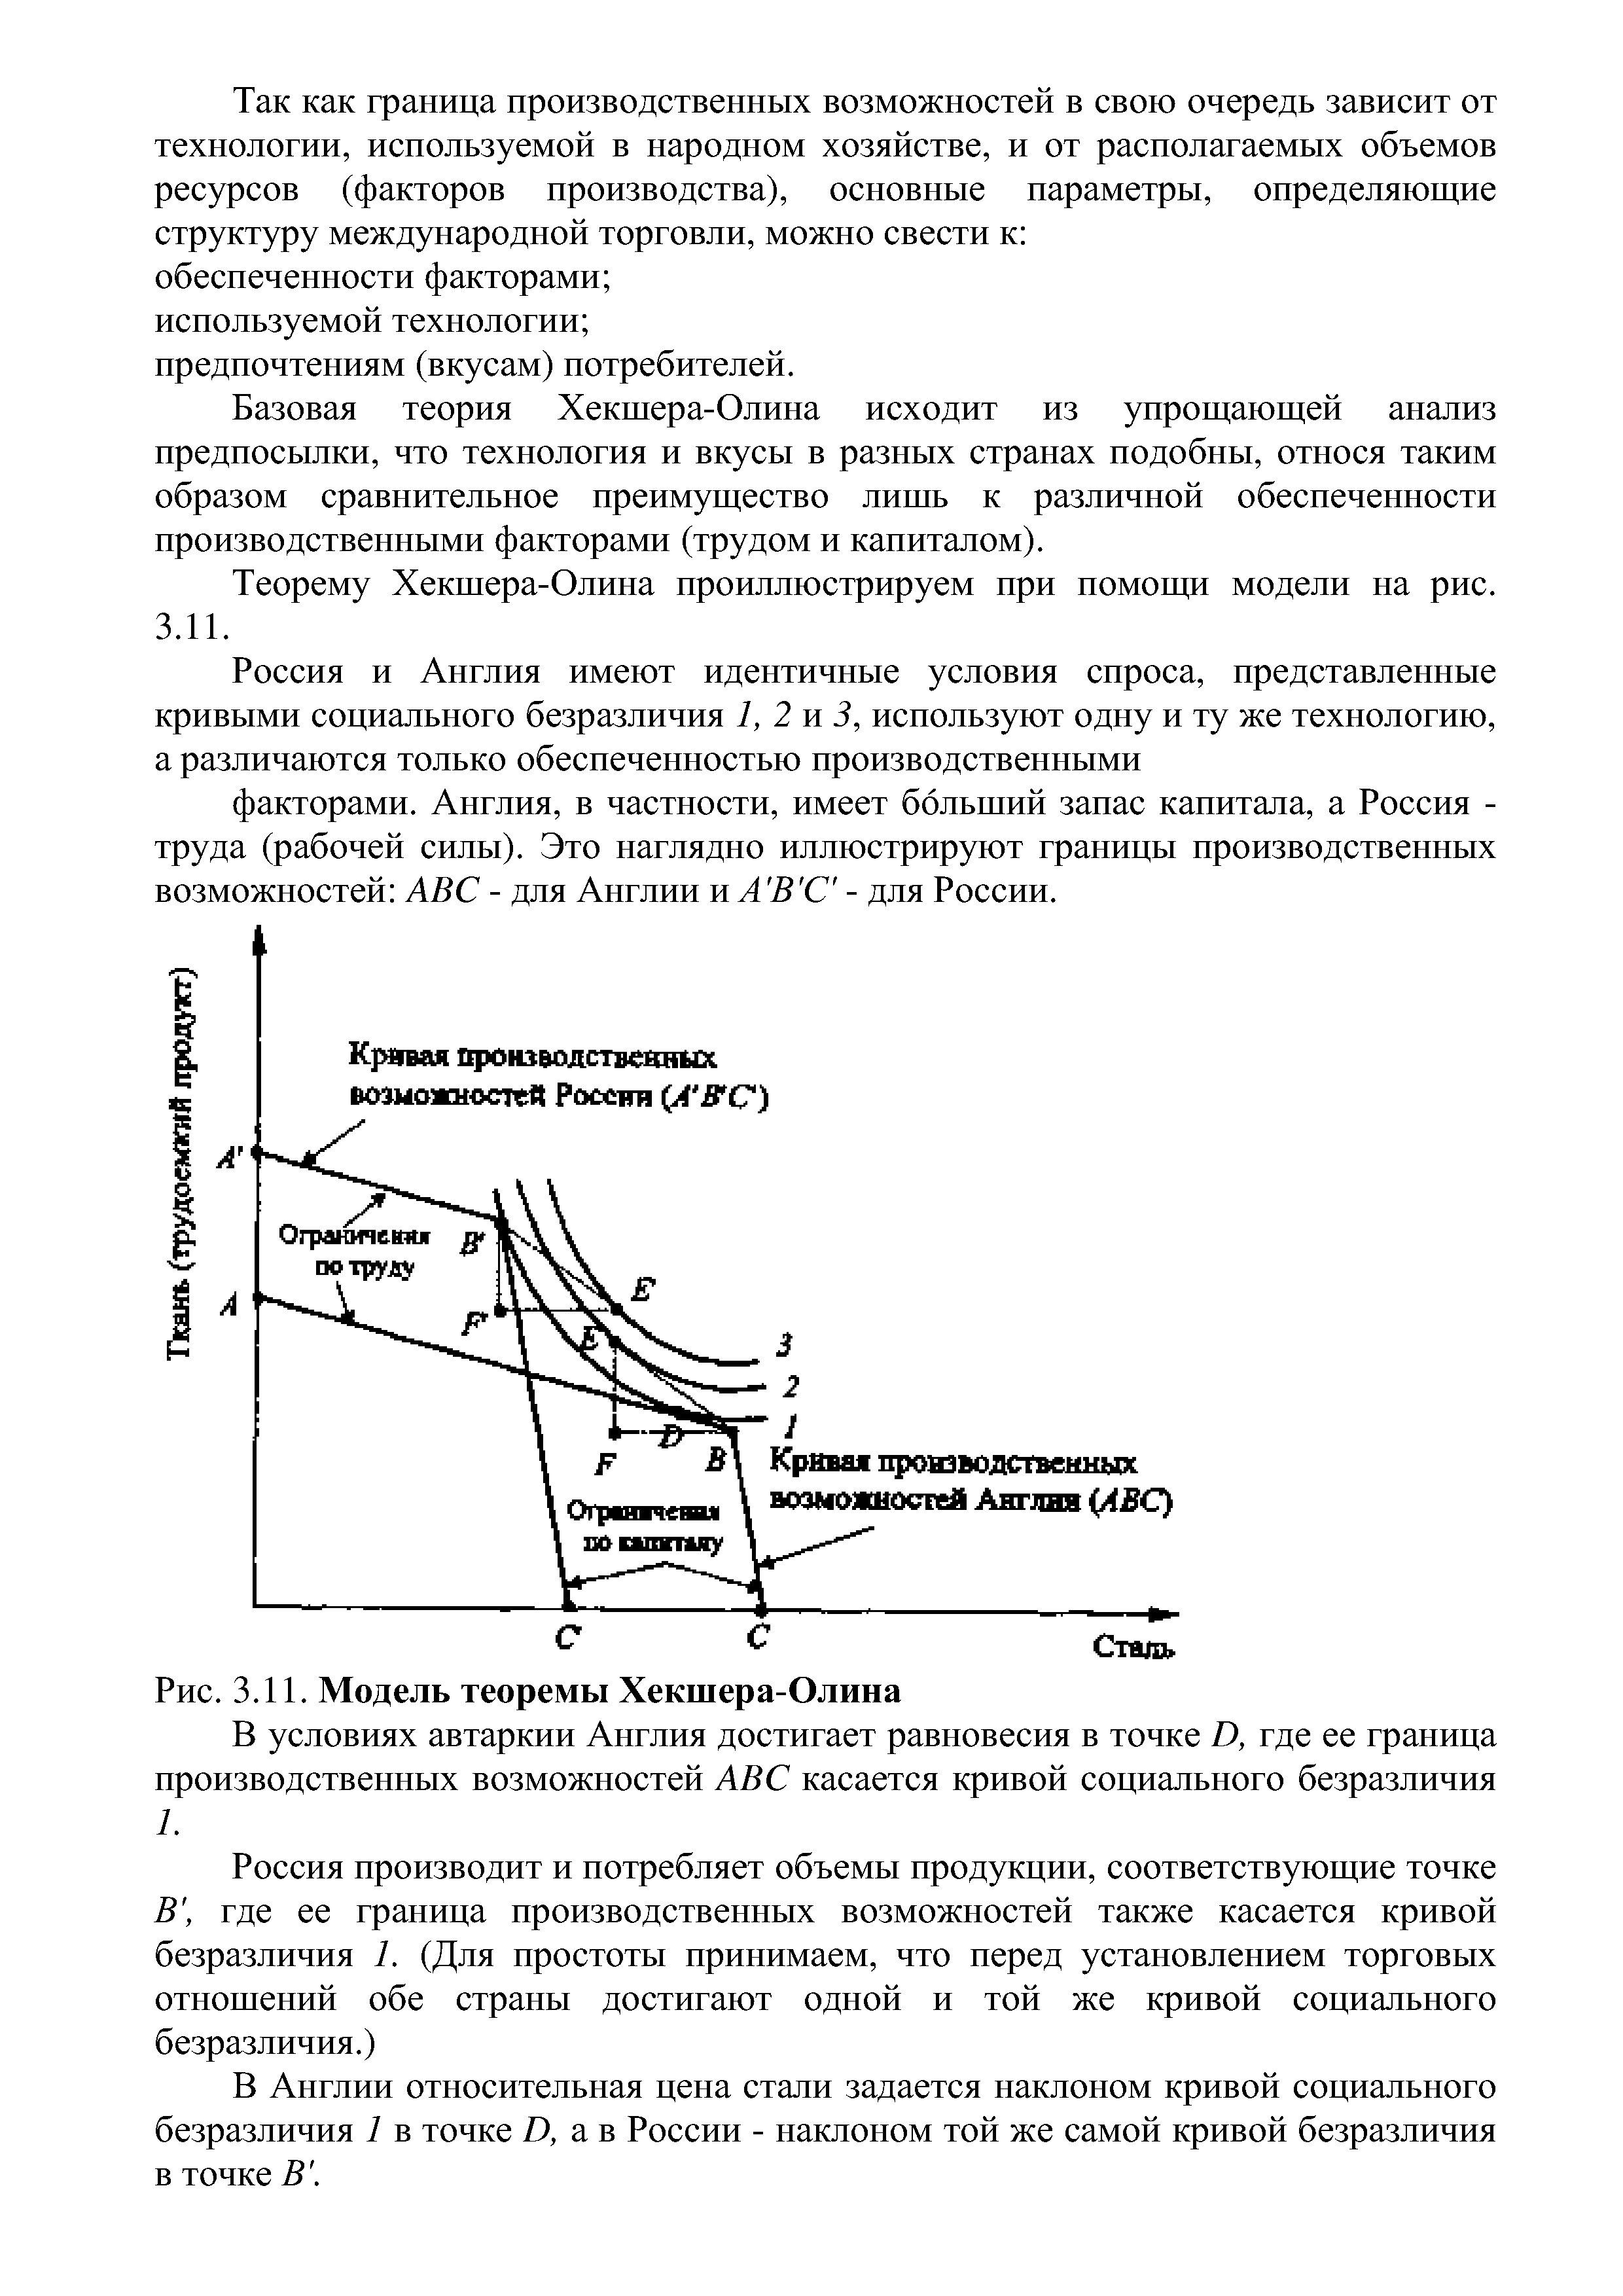 Рис. 3.11. Модель теоремы Хекшера-Олина
